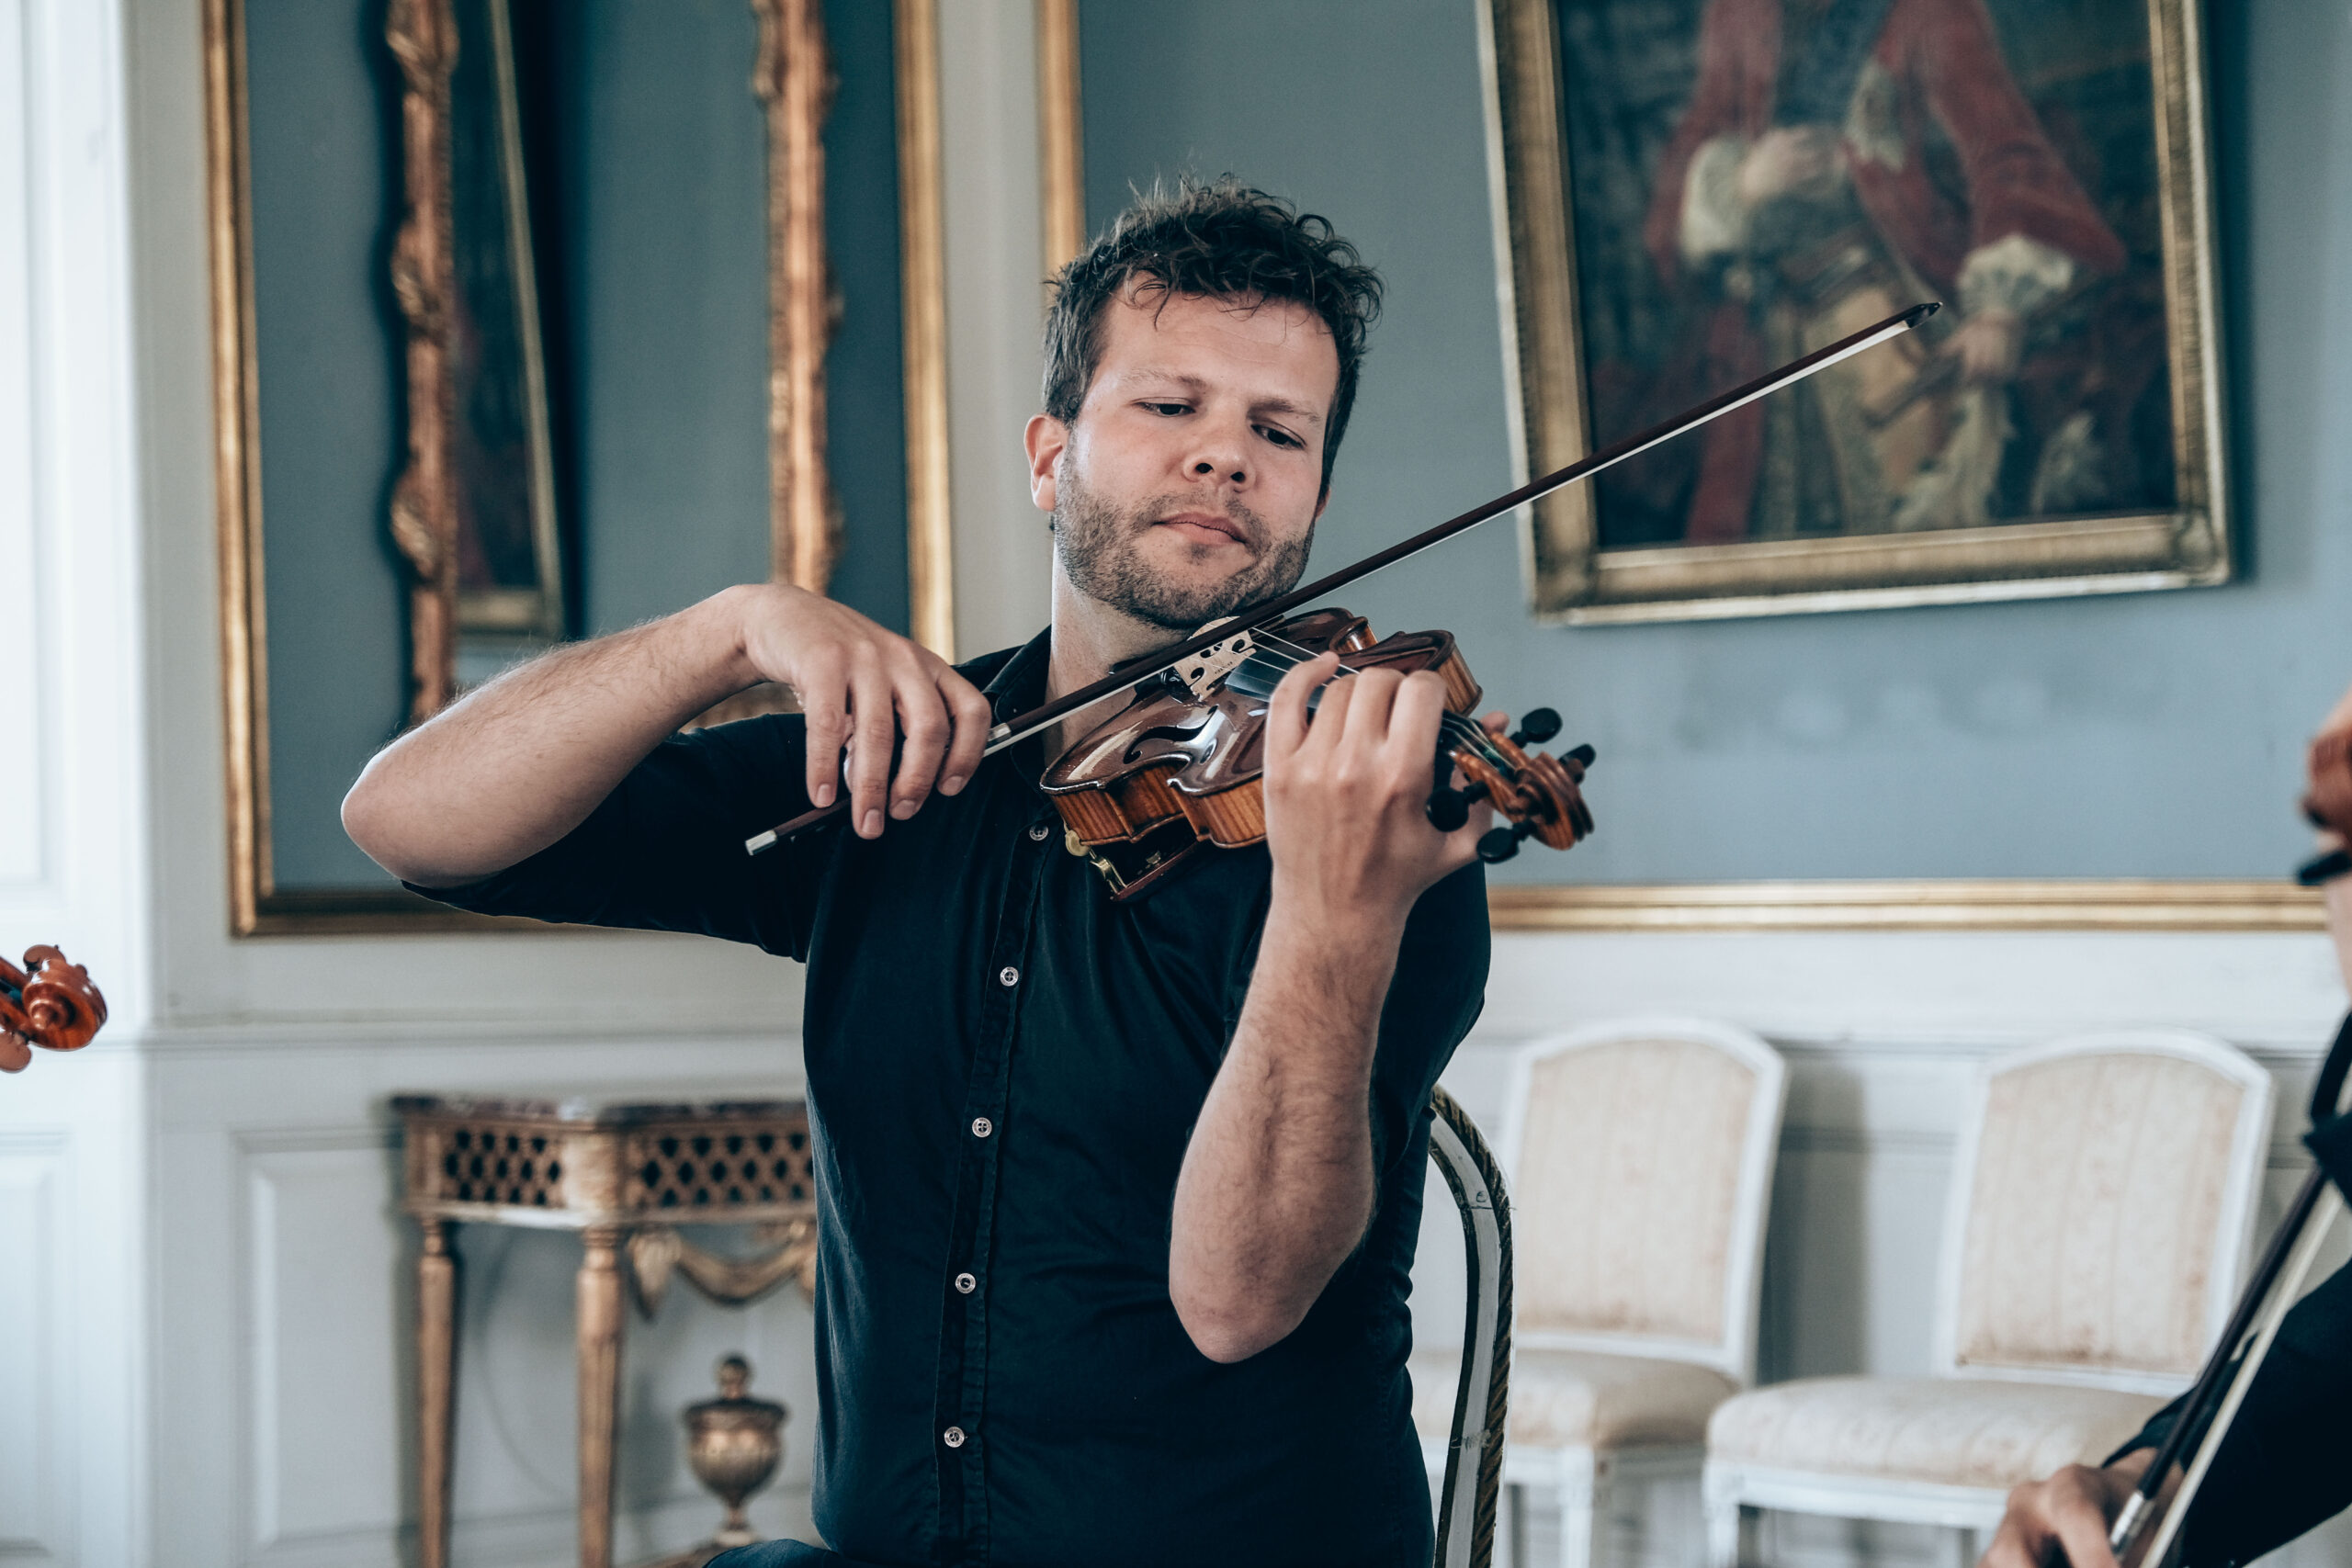 violinist dansk violin strängar strängar musik romantisk glödande romantisk musik utomhus bröllop bröllop i kyrka kyrka bröllop